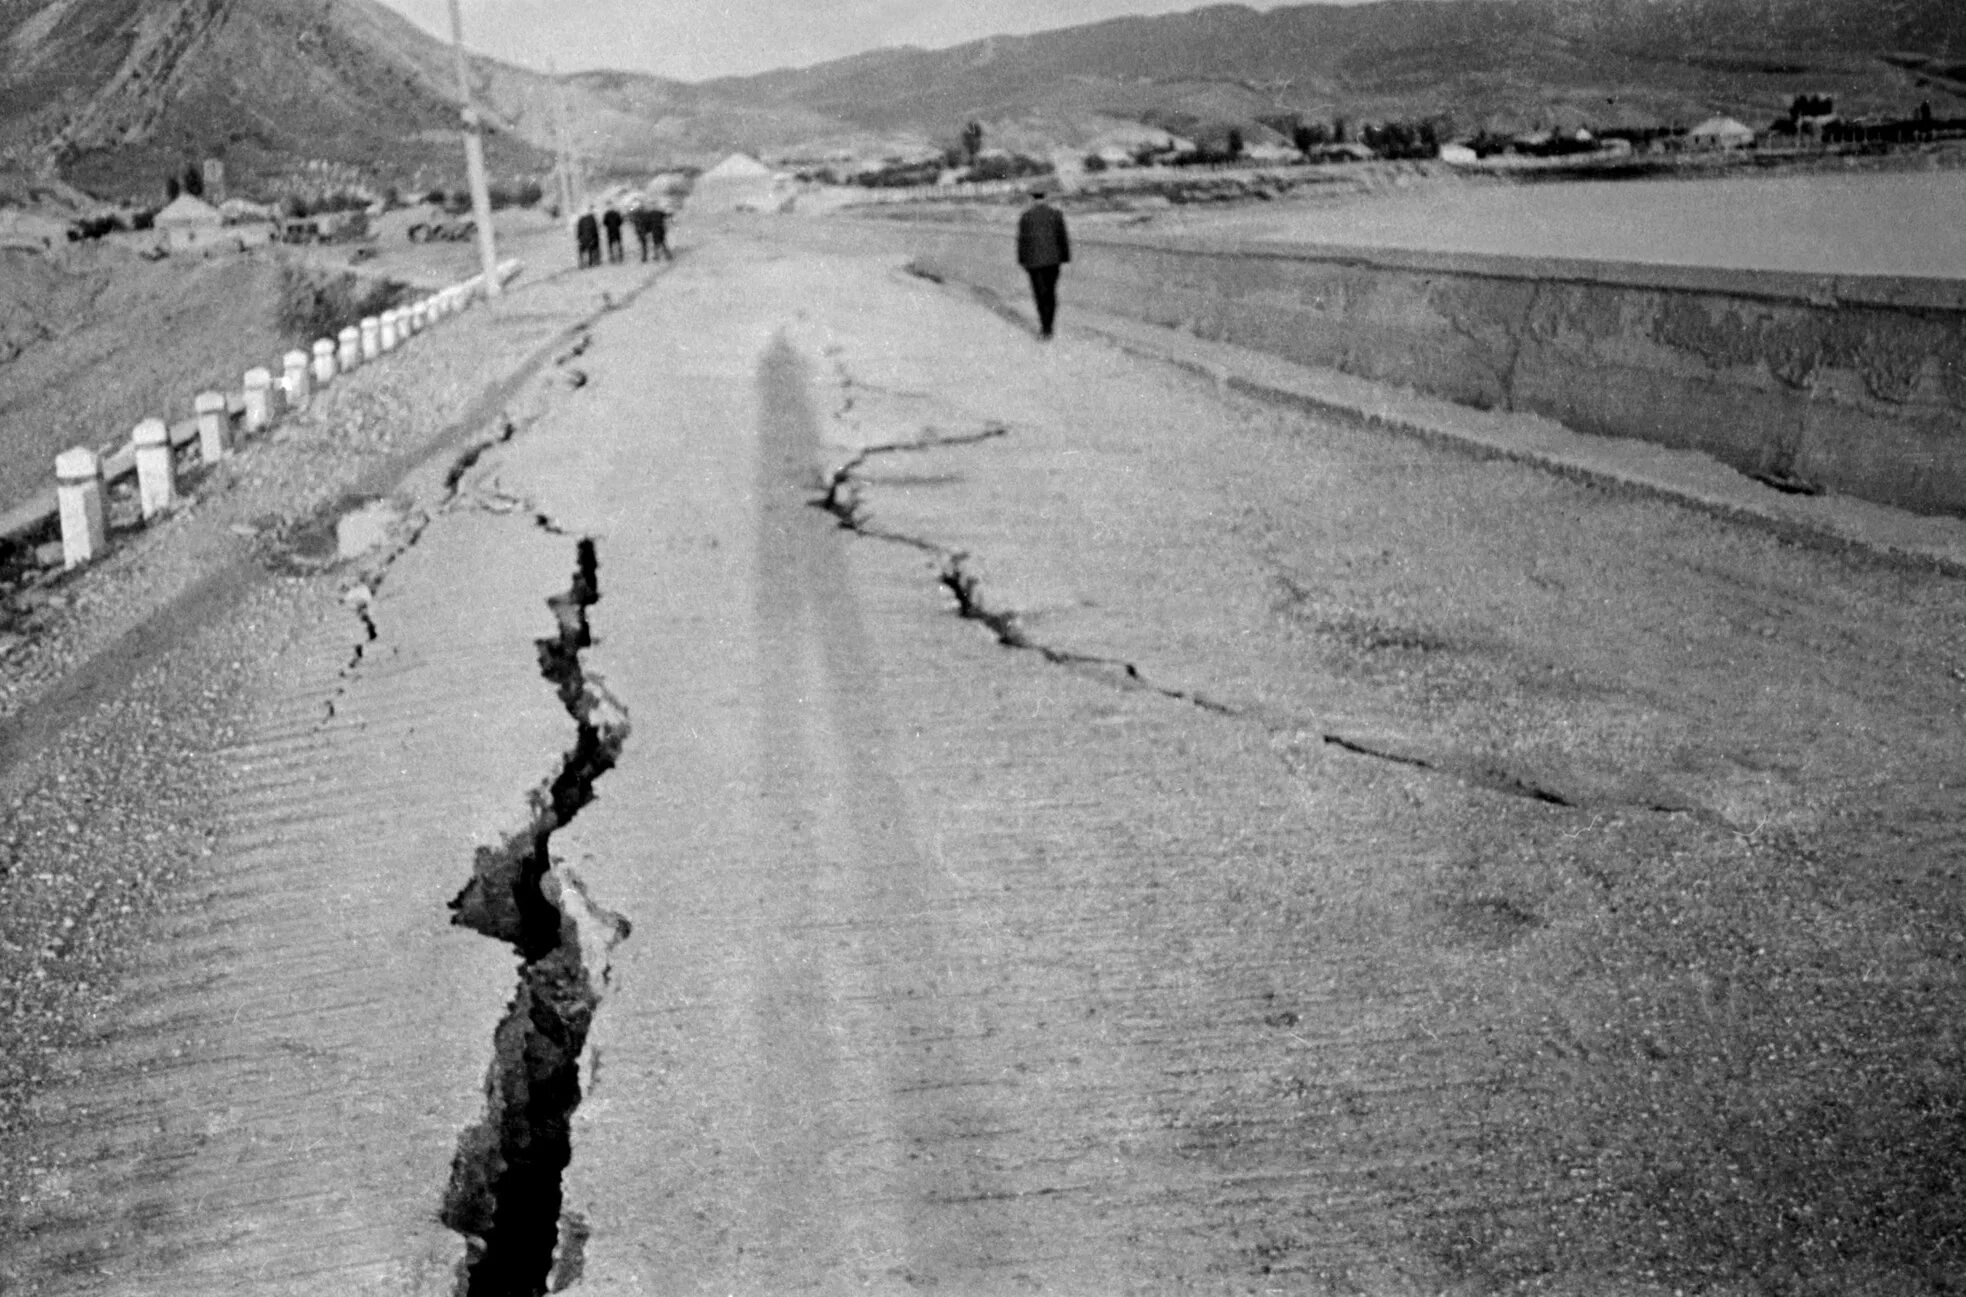 Области землетрясение в дагестане. Землетрясение в Дагестане 1970. Землетрясение в Махачкале 1970. Землетрясение 1970 года в Дагестане. Юнгай Перу 1970 год.